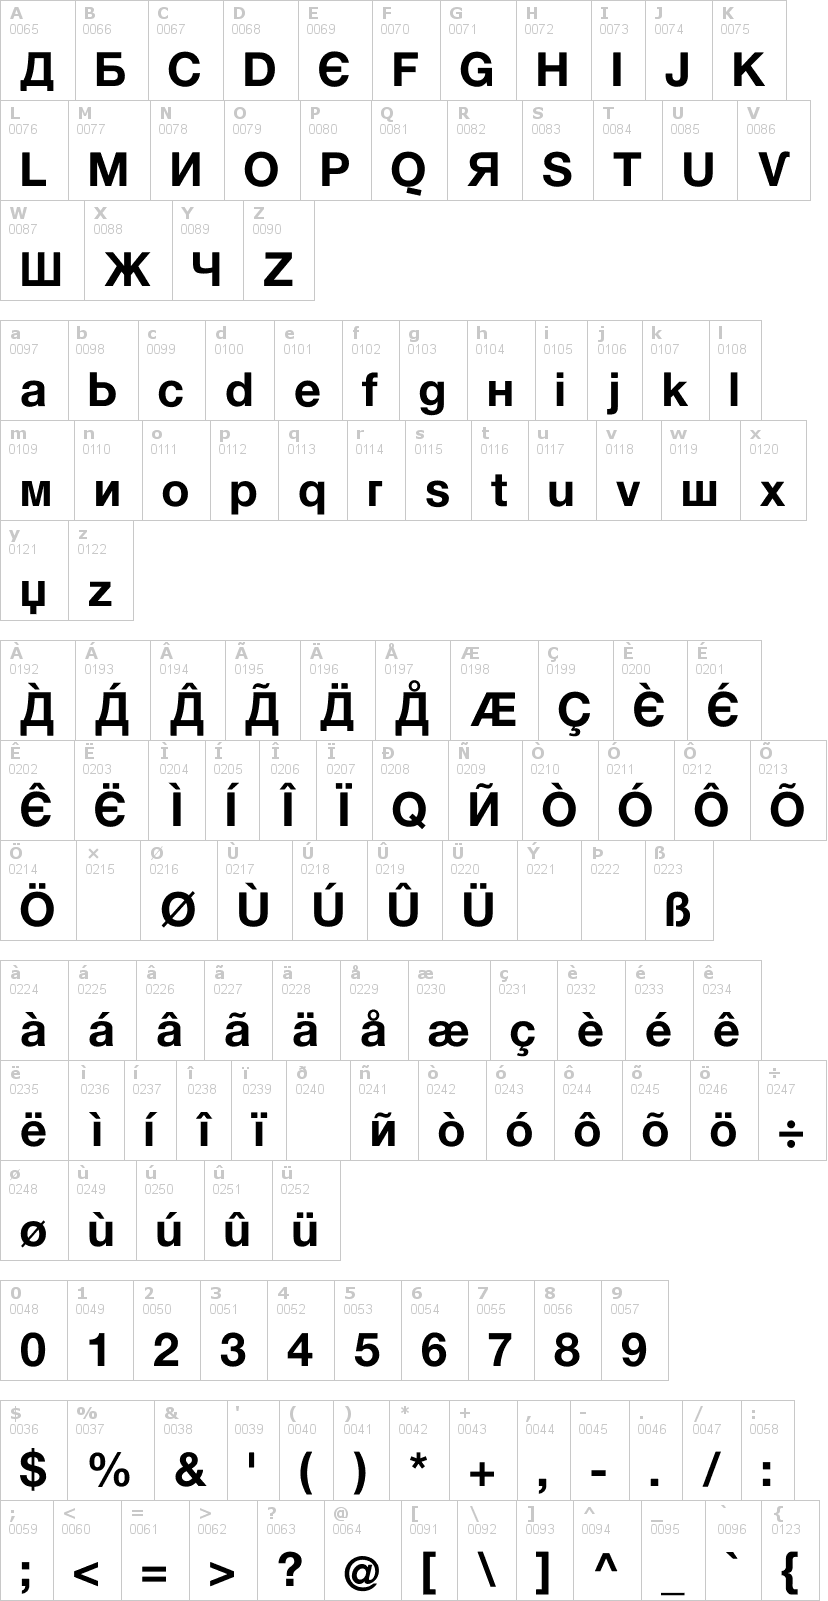 Lettere dell'alfabeto del font kyrilla con le quali è possibile realizzare adesivi prespaziati